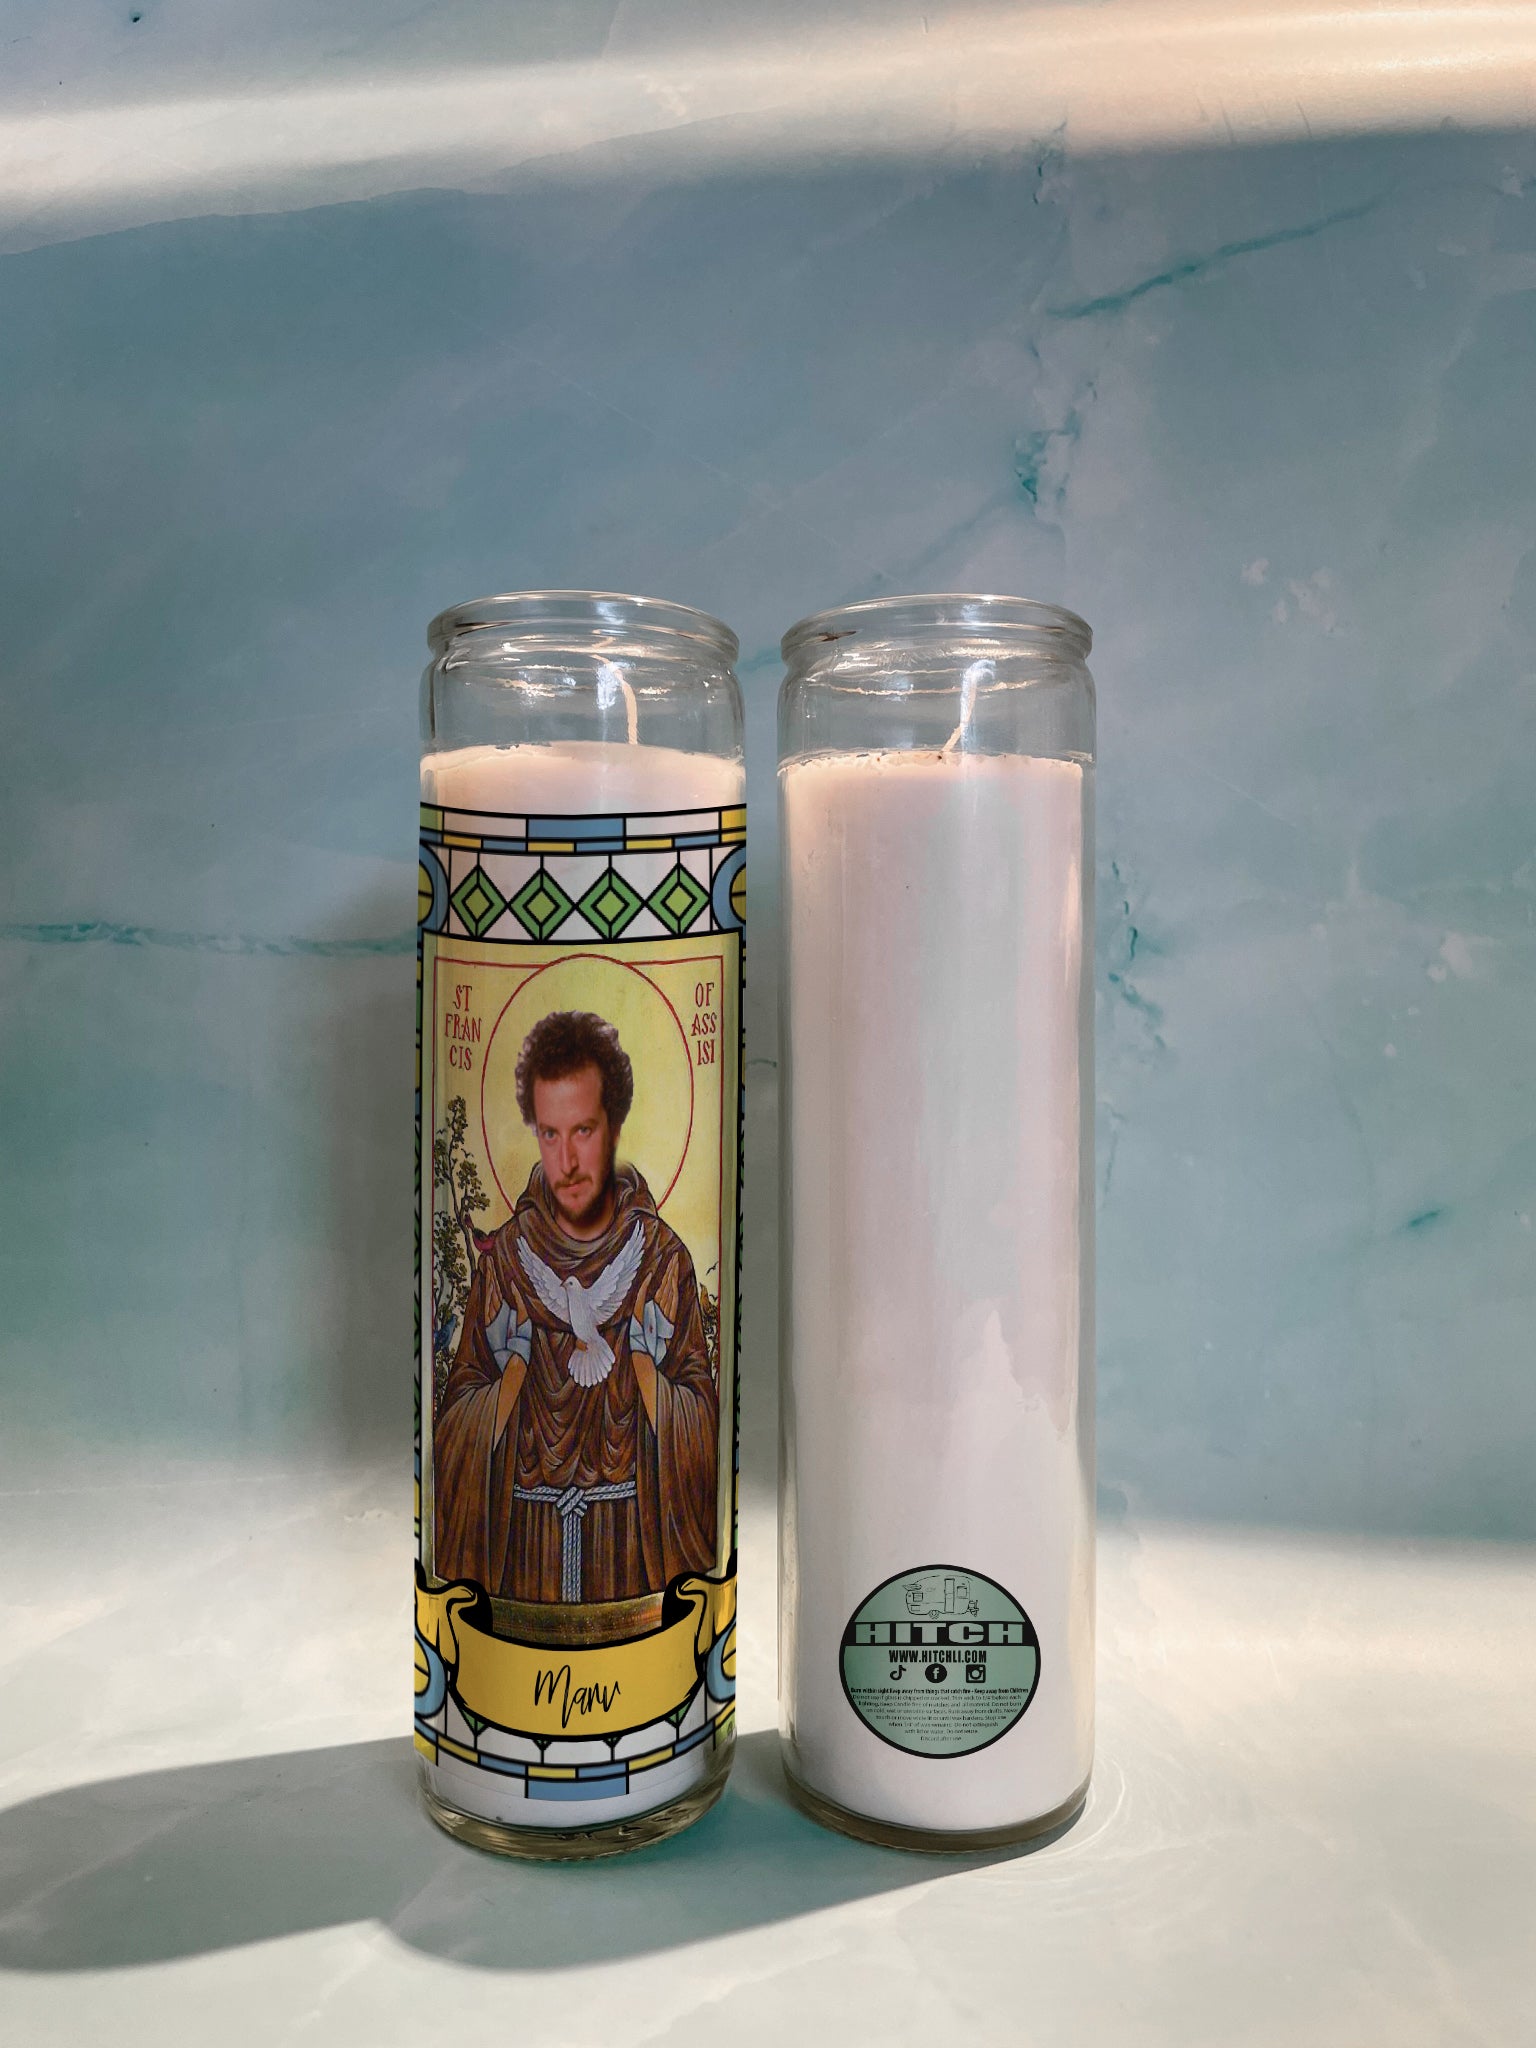 Marv (Home Alone) Original Prayer Candle